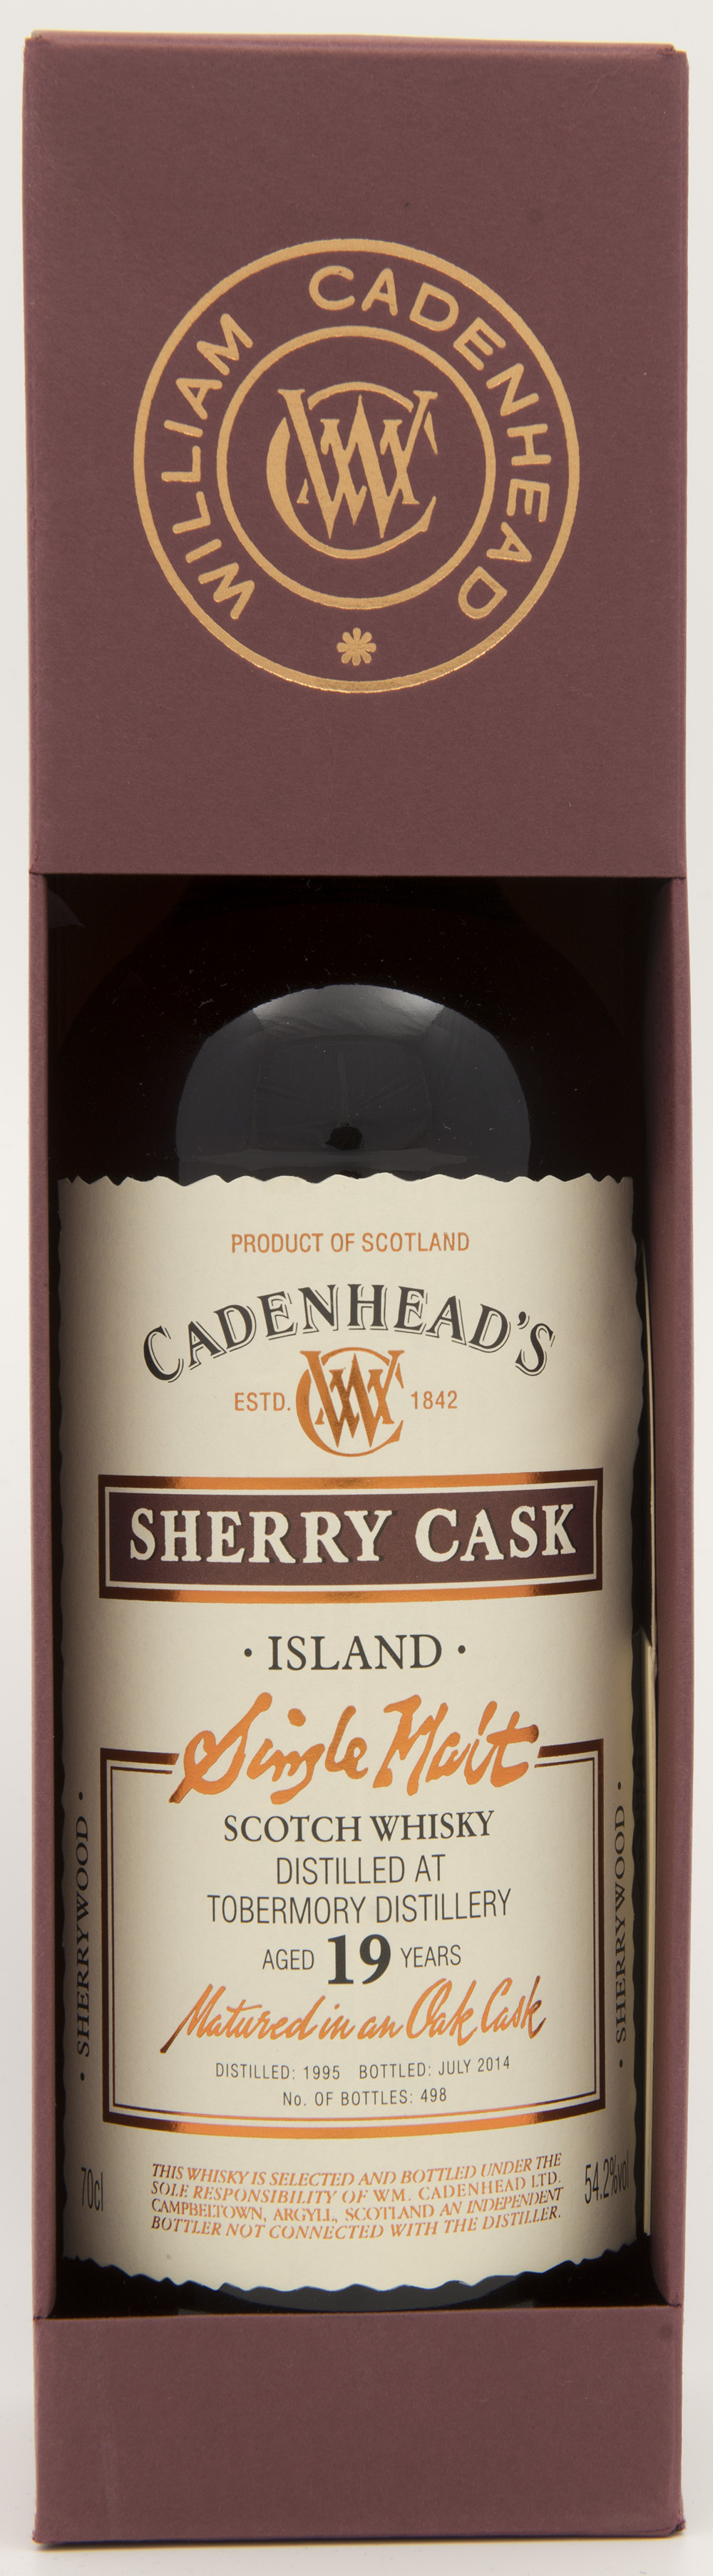 Billede: DSC_4827 - Cadenheads Sherry Cask - Tobermory 19 years - bottle in box.jpg